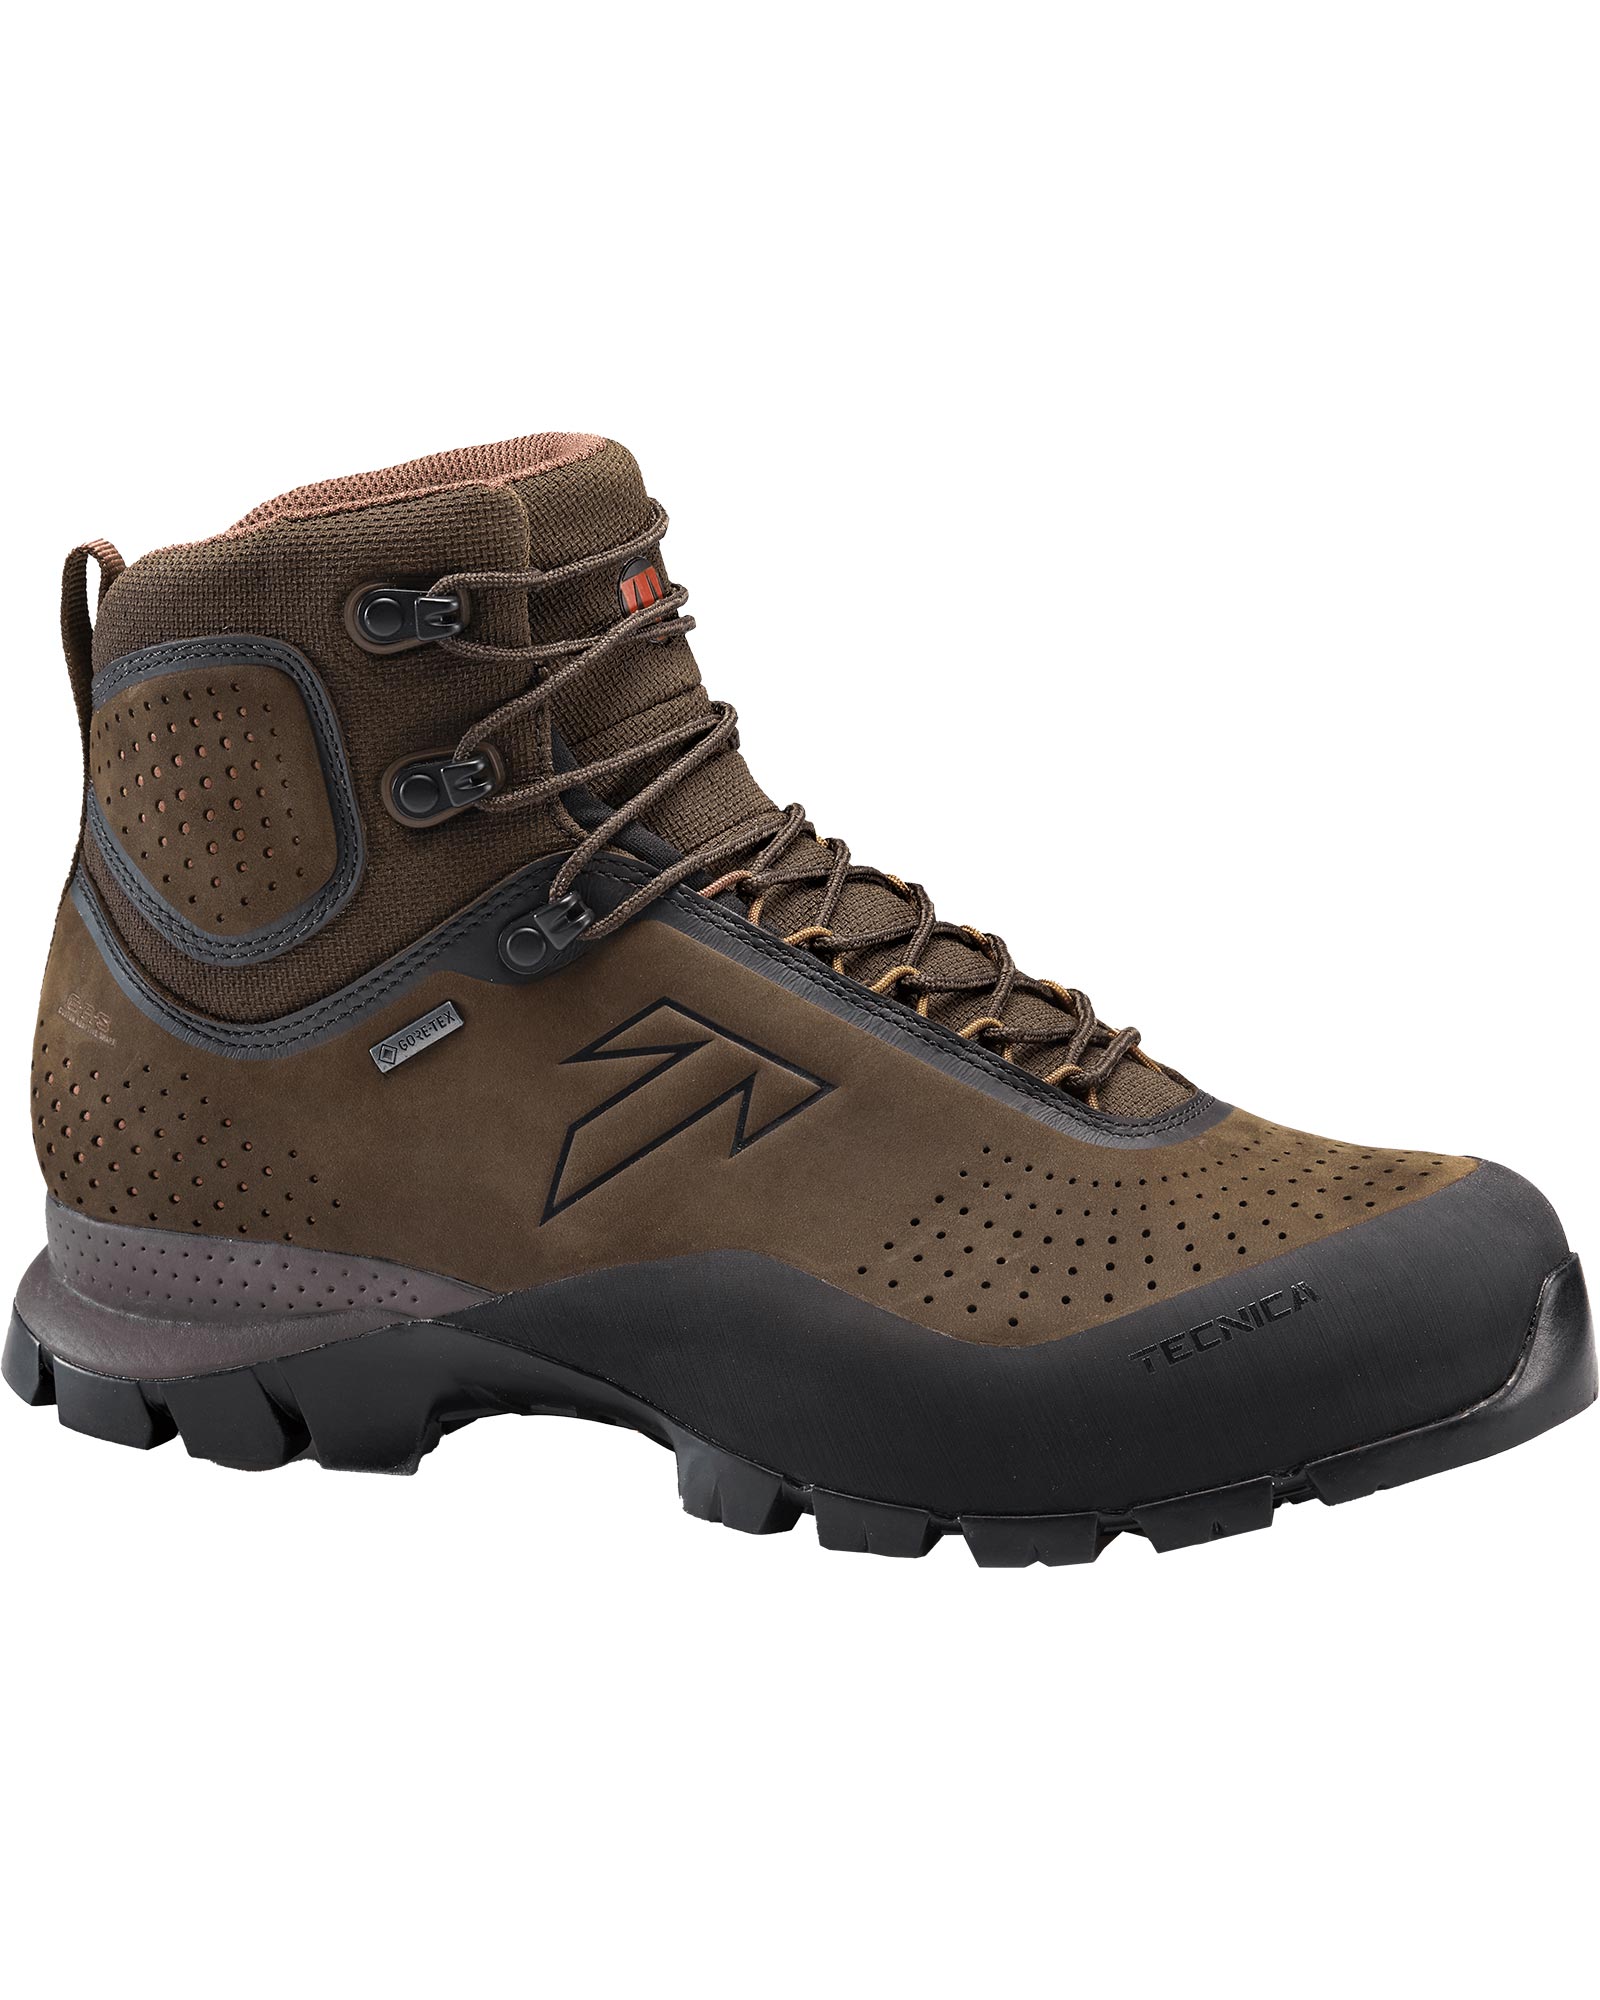 Tecnica Forge GORE TEX Men’s Boots - Night Tierra/Rich Laterite UK 9.5